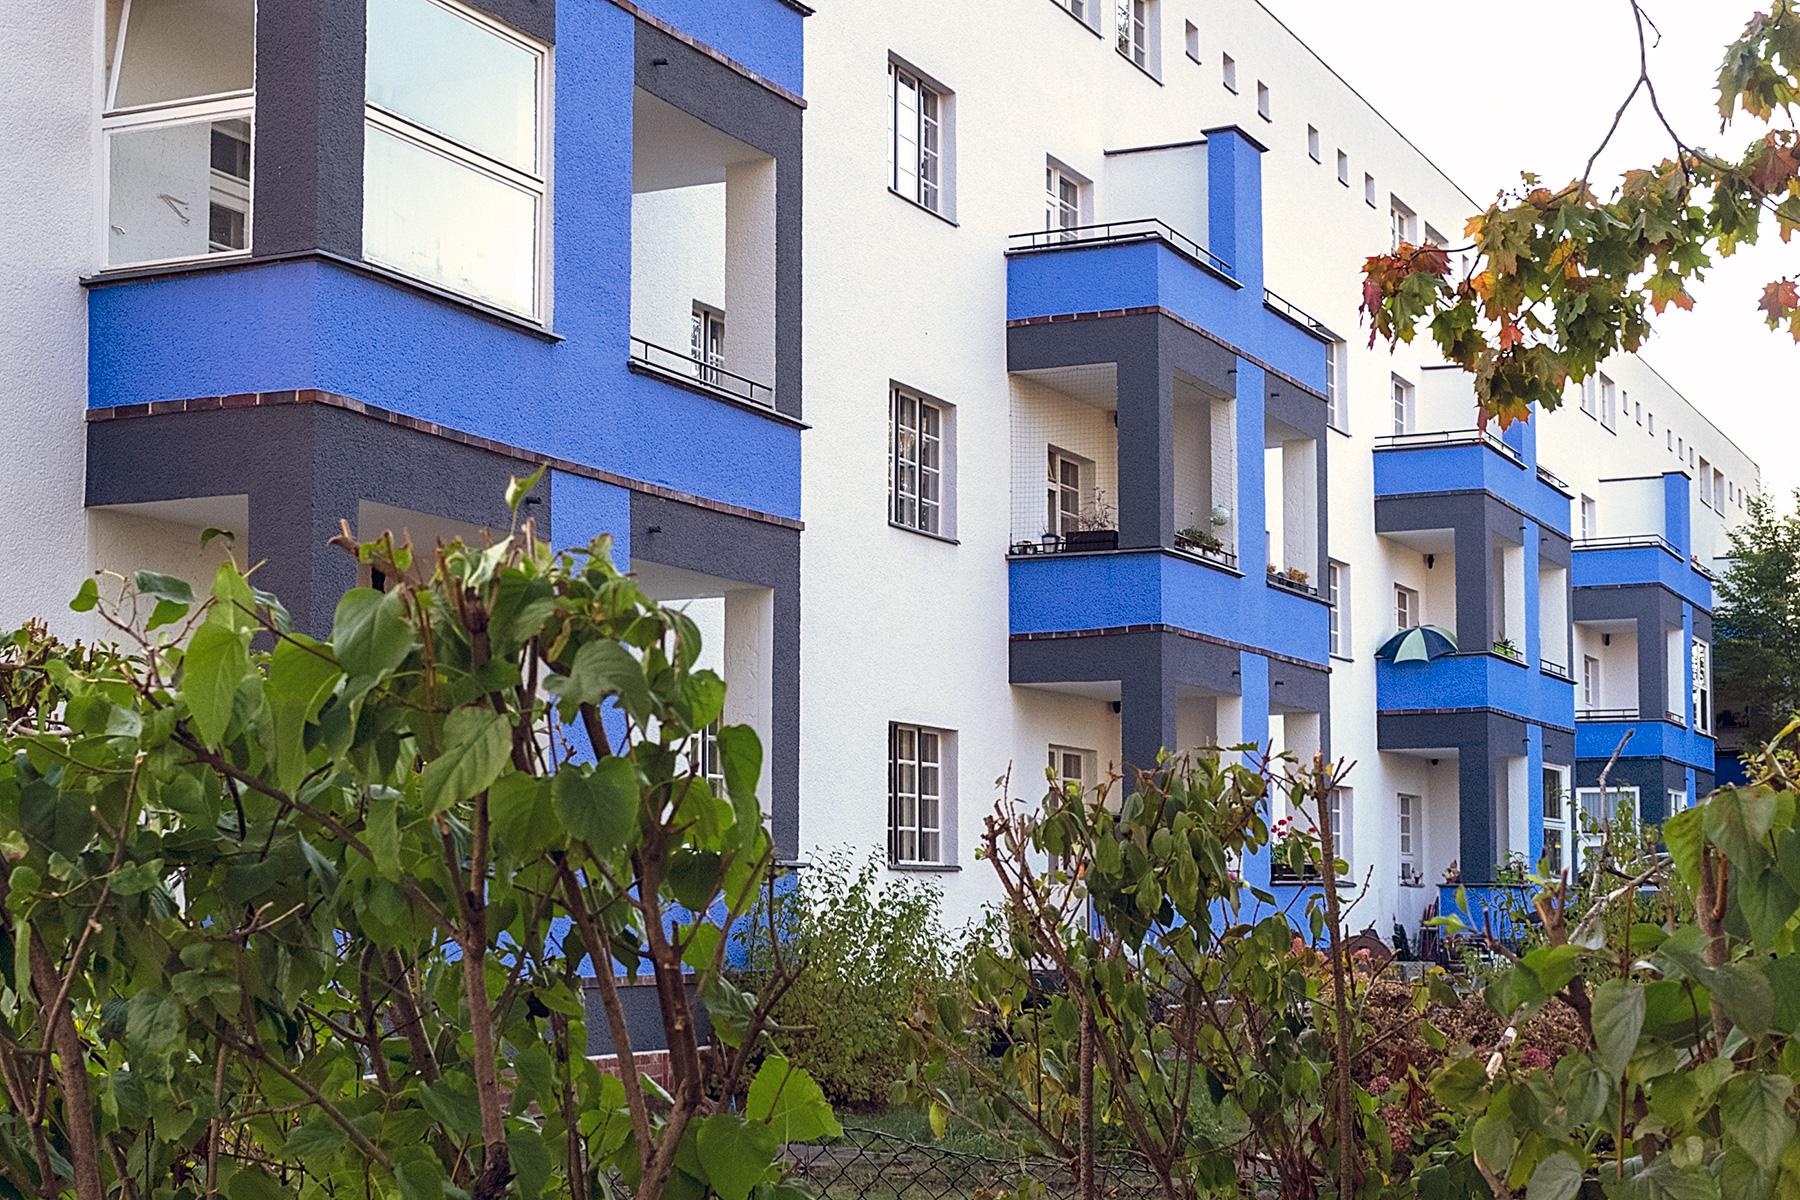 Hausfassade mit blauen Balkonen in der Siedlung des UNESCO Welterbes